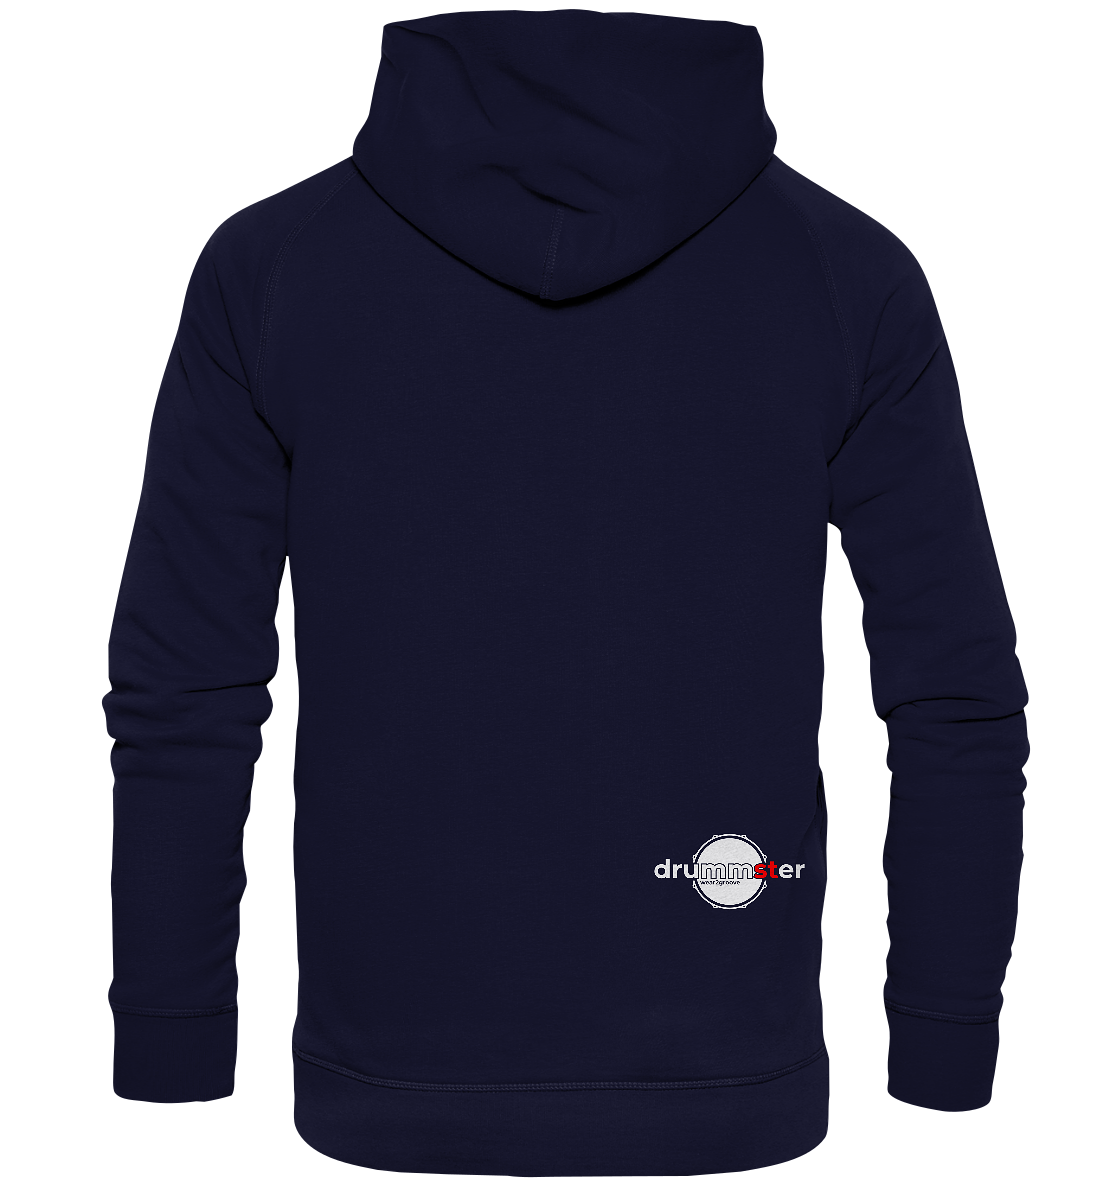 play - unisex hoodie | various colors